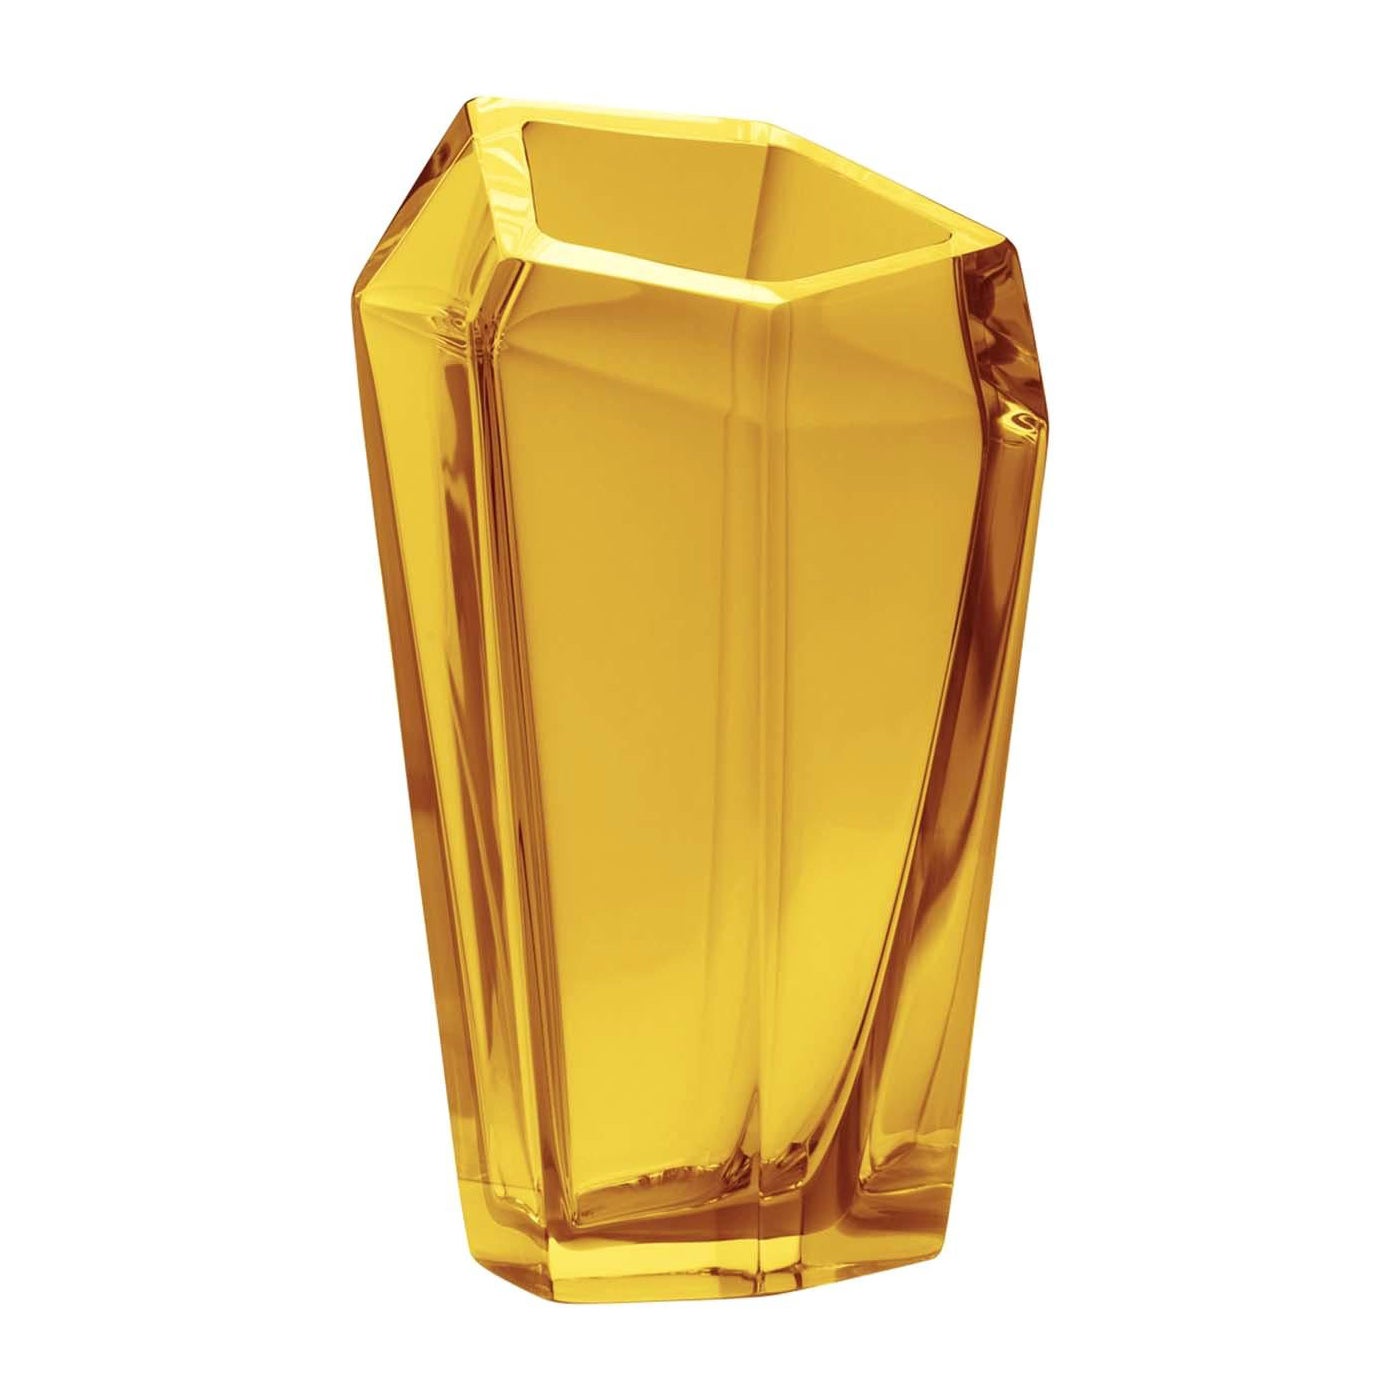 Kastle Yellow Extra Large Vase by Karim Rashid